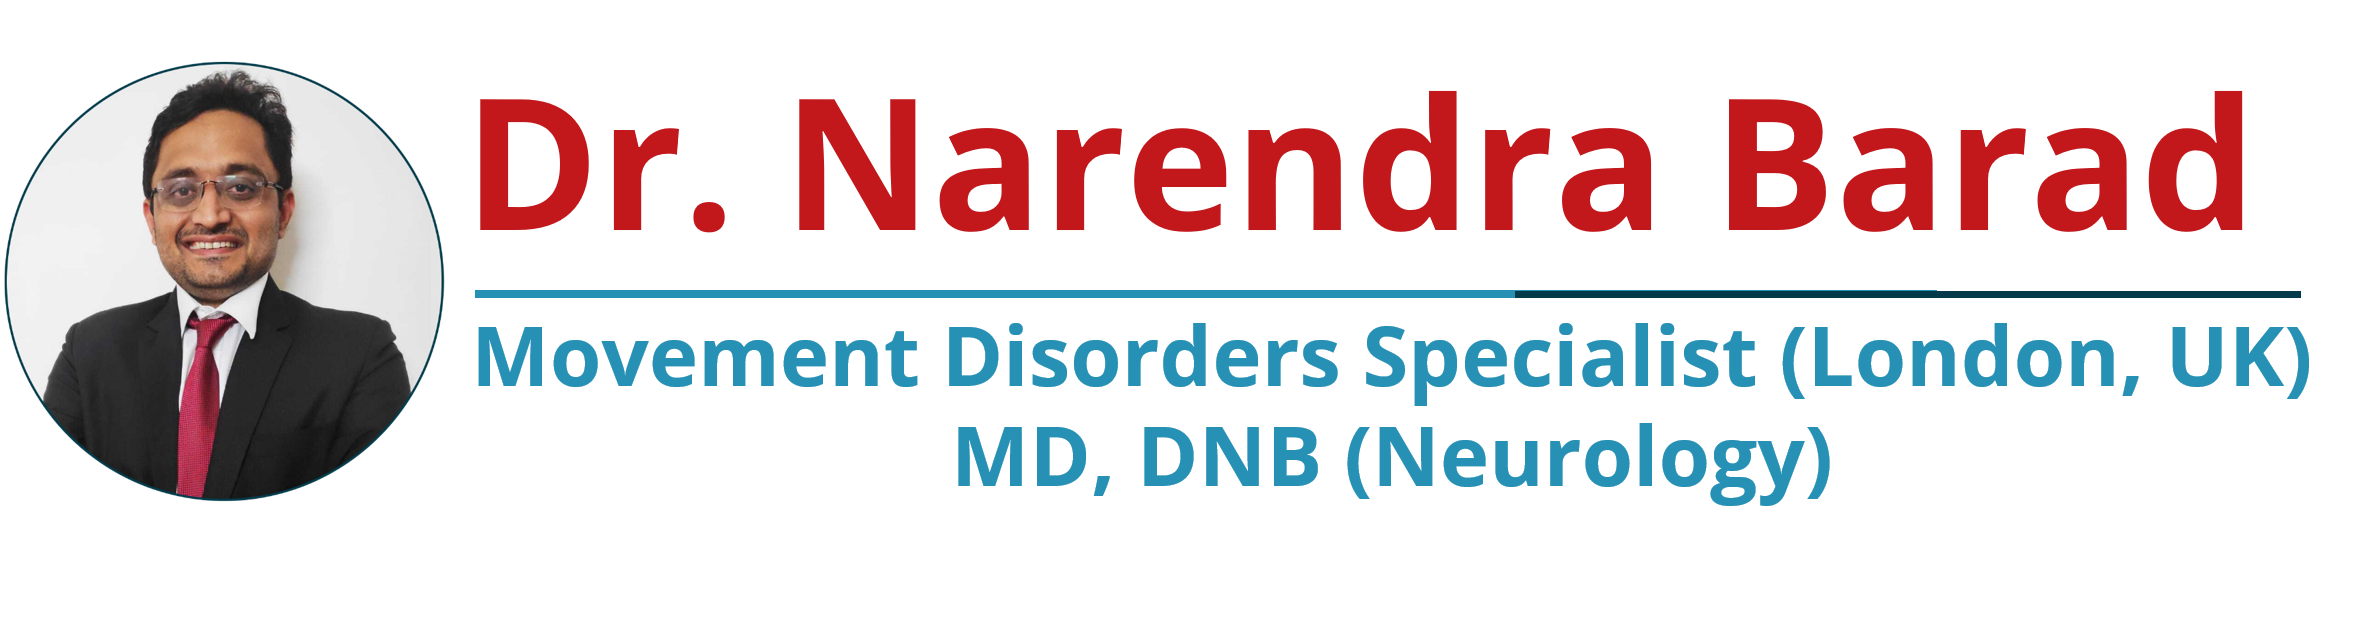 Dr. Narendra Barad